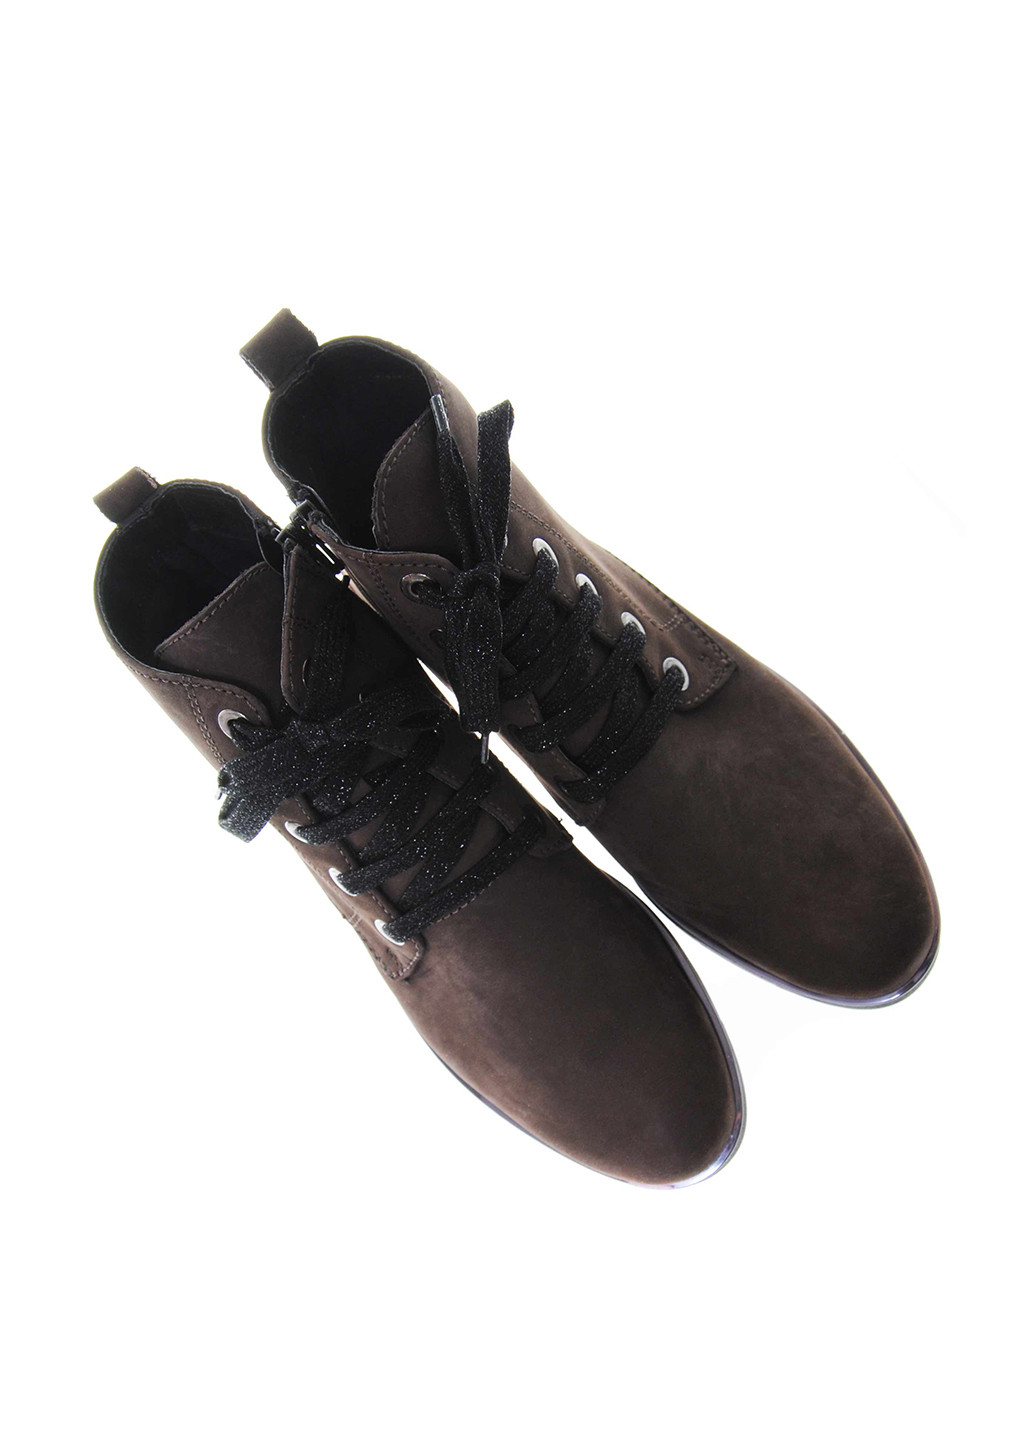 Осенние ботинки Flexx со шнуровкой из натурального нубука